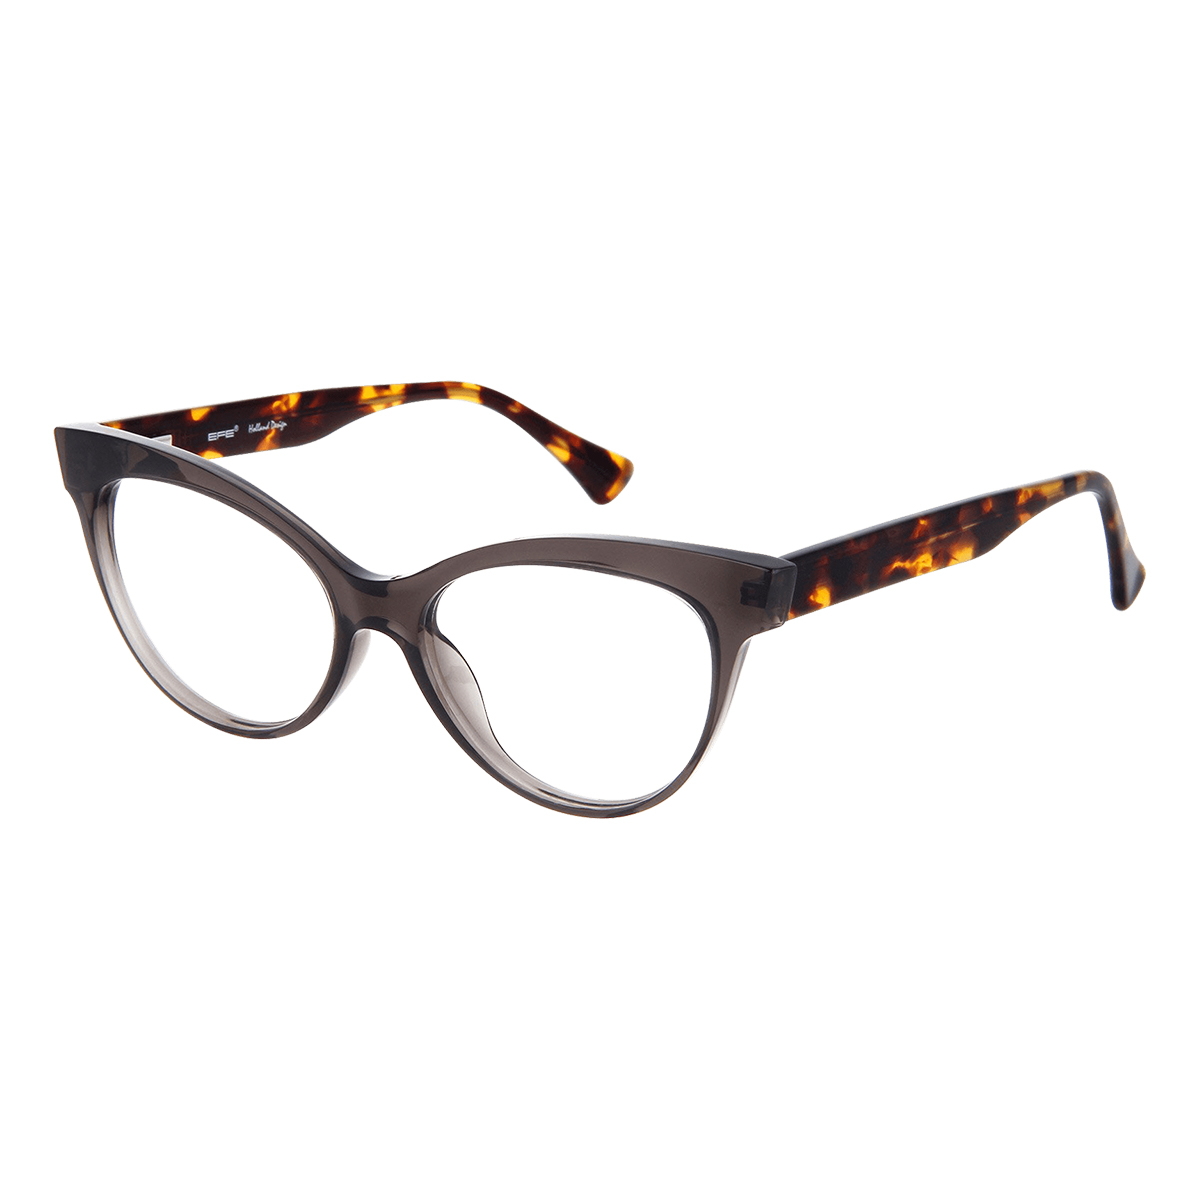 Cadytis - Cat-eye Gray Reading Glasses for Women